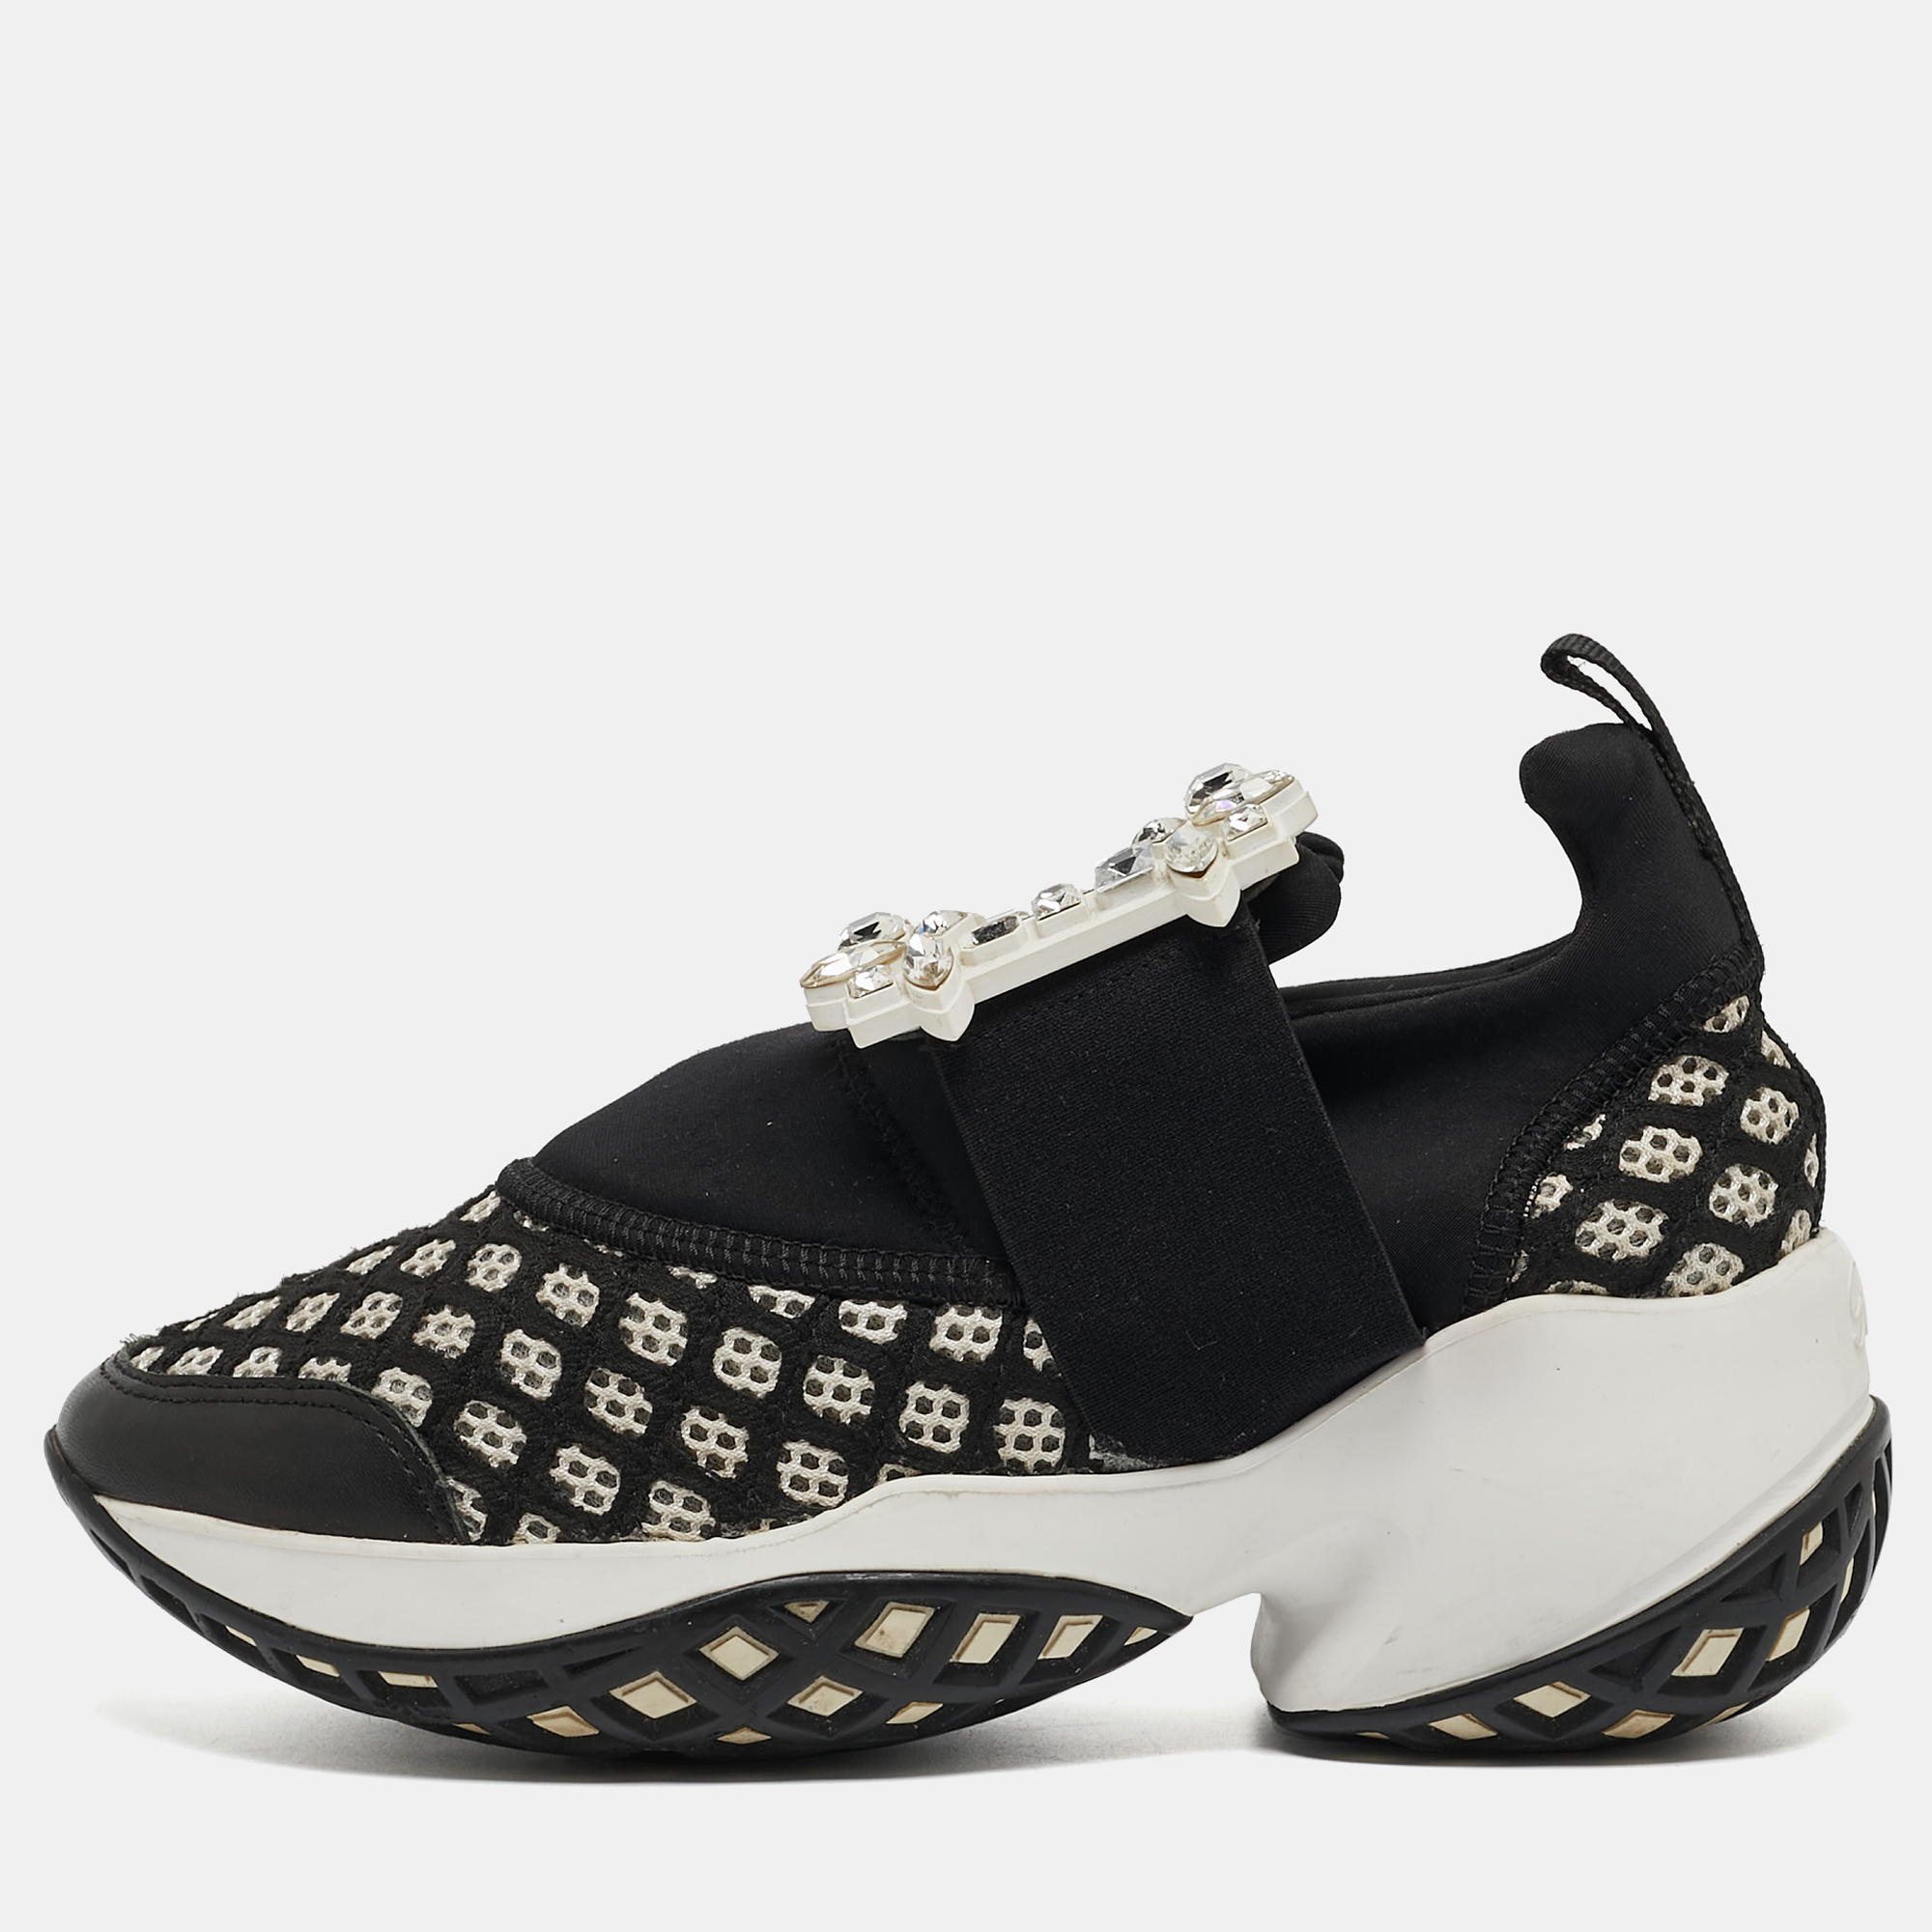 Roger vivier black/white mesh and neoprene viv run strass sneakers size 35